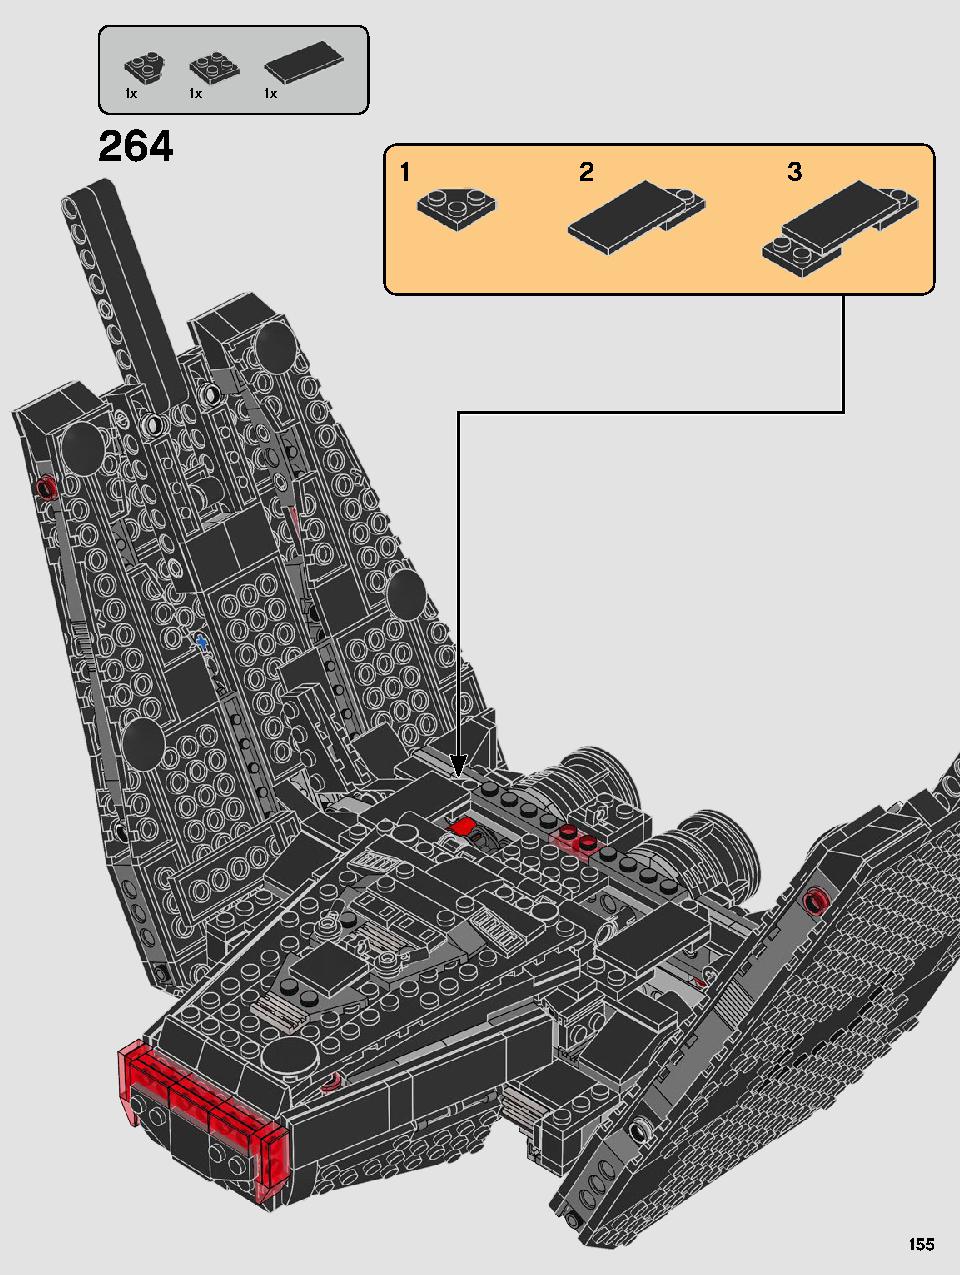 스타워즈 카일로 렌의 셔틀™ 75256 레고 세트 제품정보 레고 조립설명서 155 page